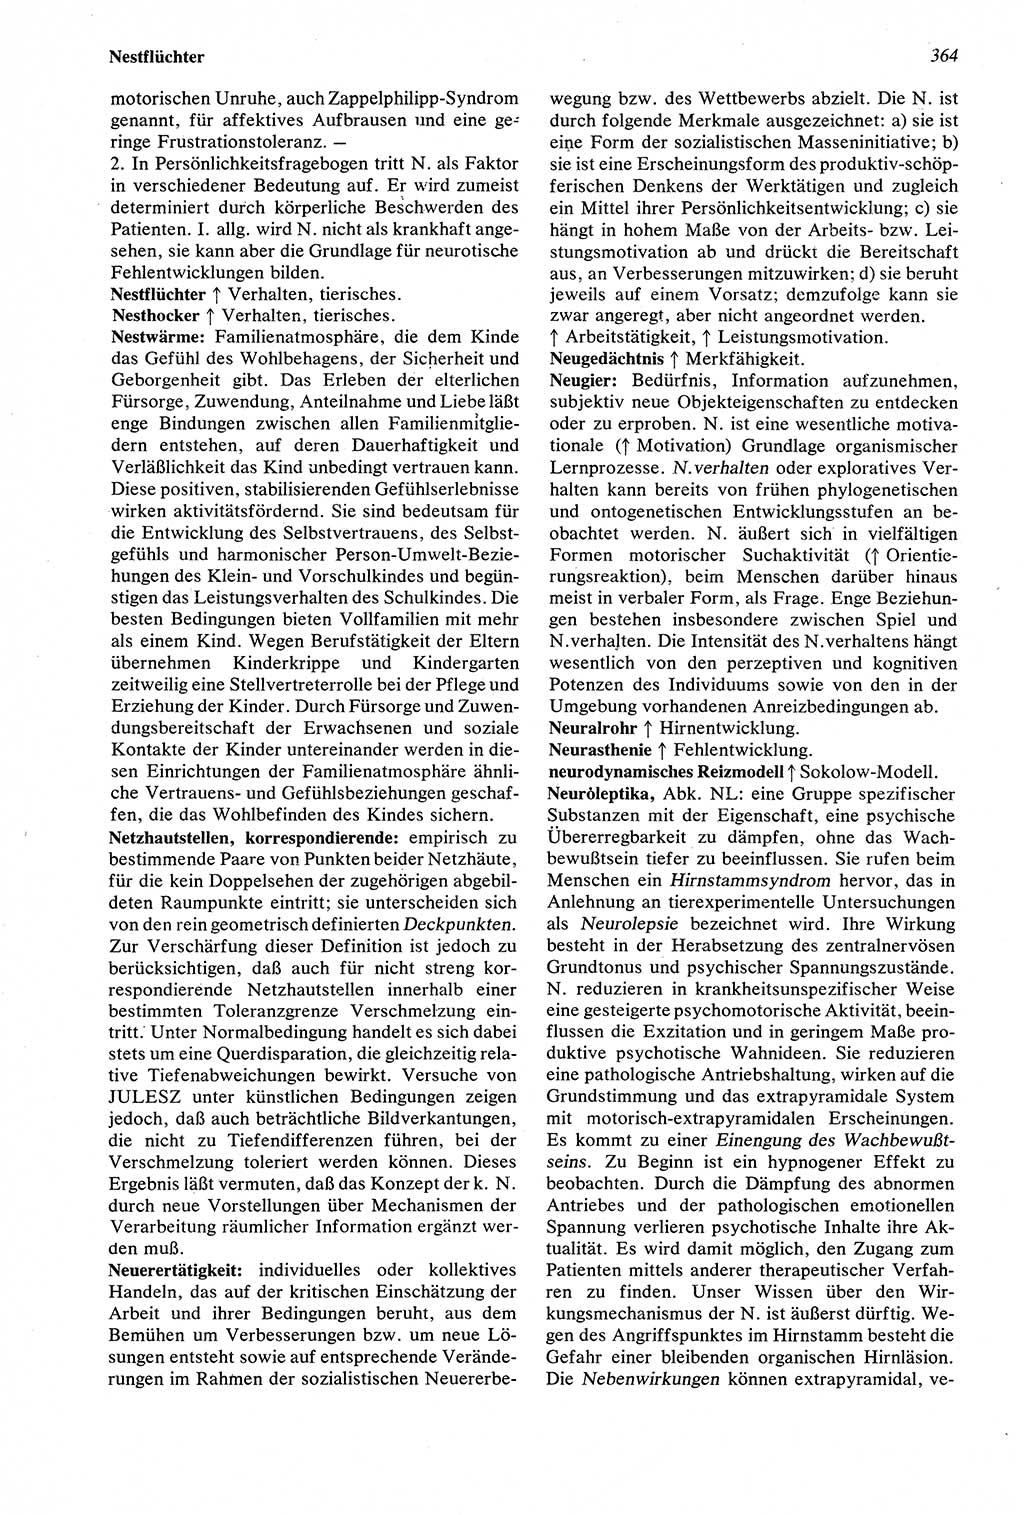 Wörterbuch der Psychologie [Deutsche Demokratische Republik (DDR)] 1976, Seite 364 (Wb. Psych. DDR 1976, S. 364)